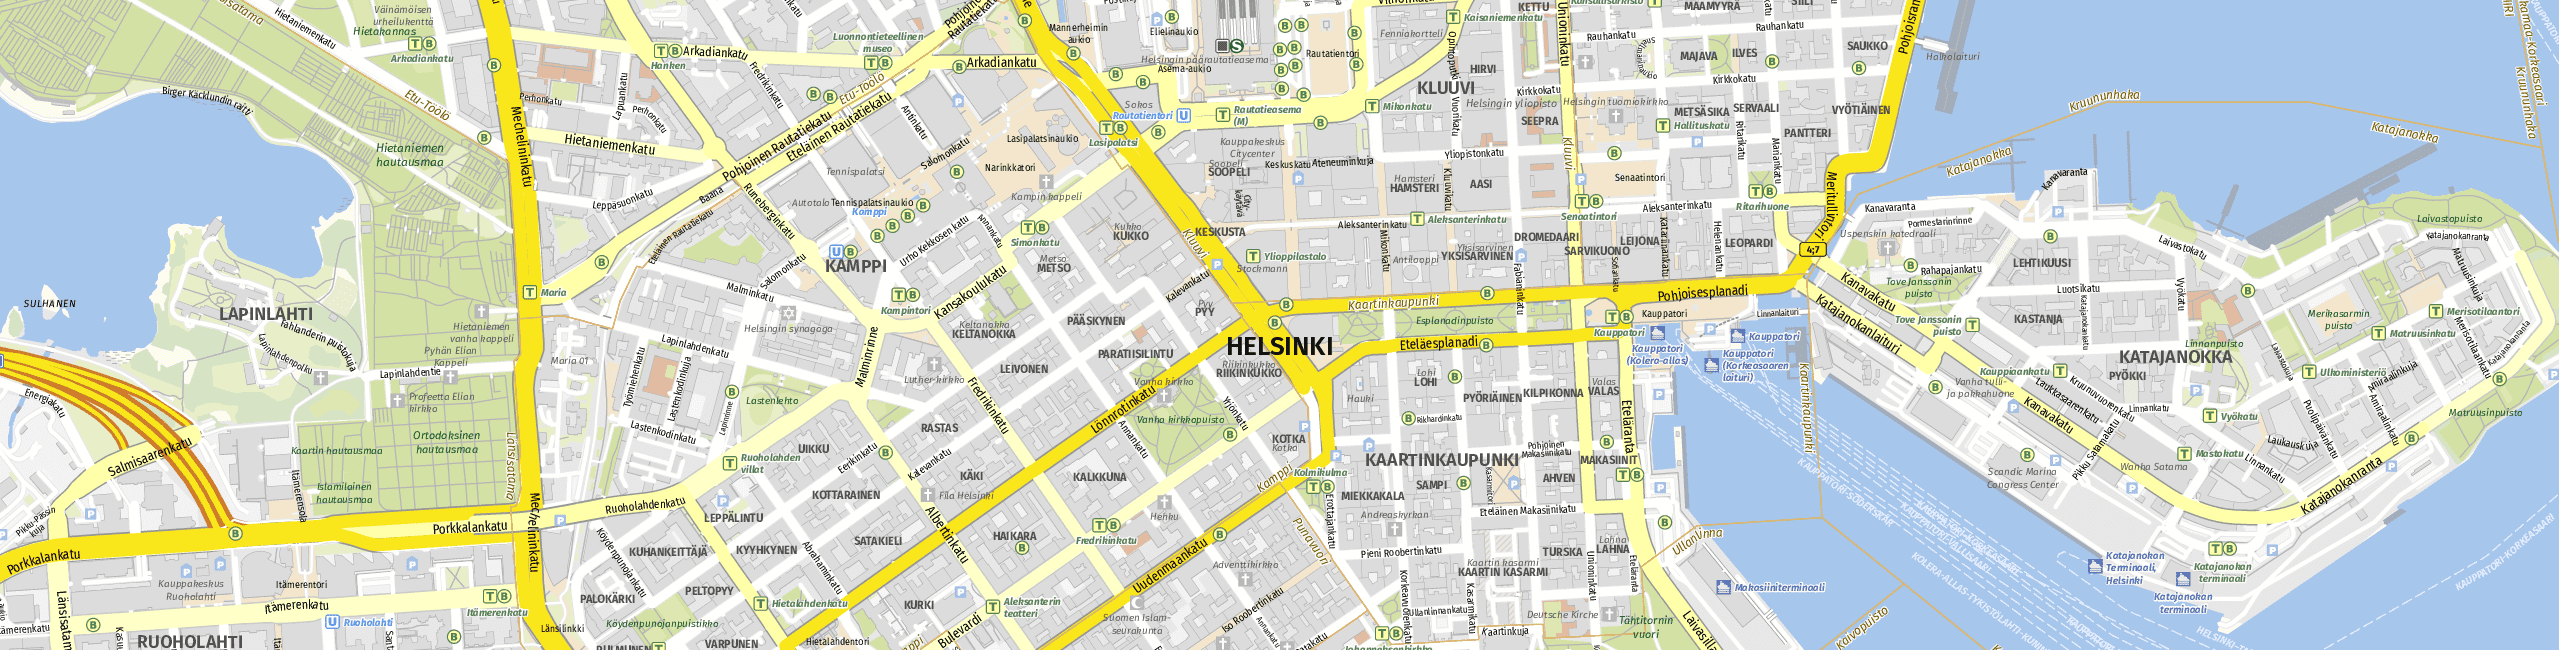 Stadtplan Helsinki zum Downloaden.